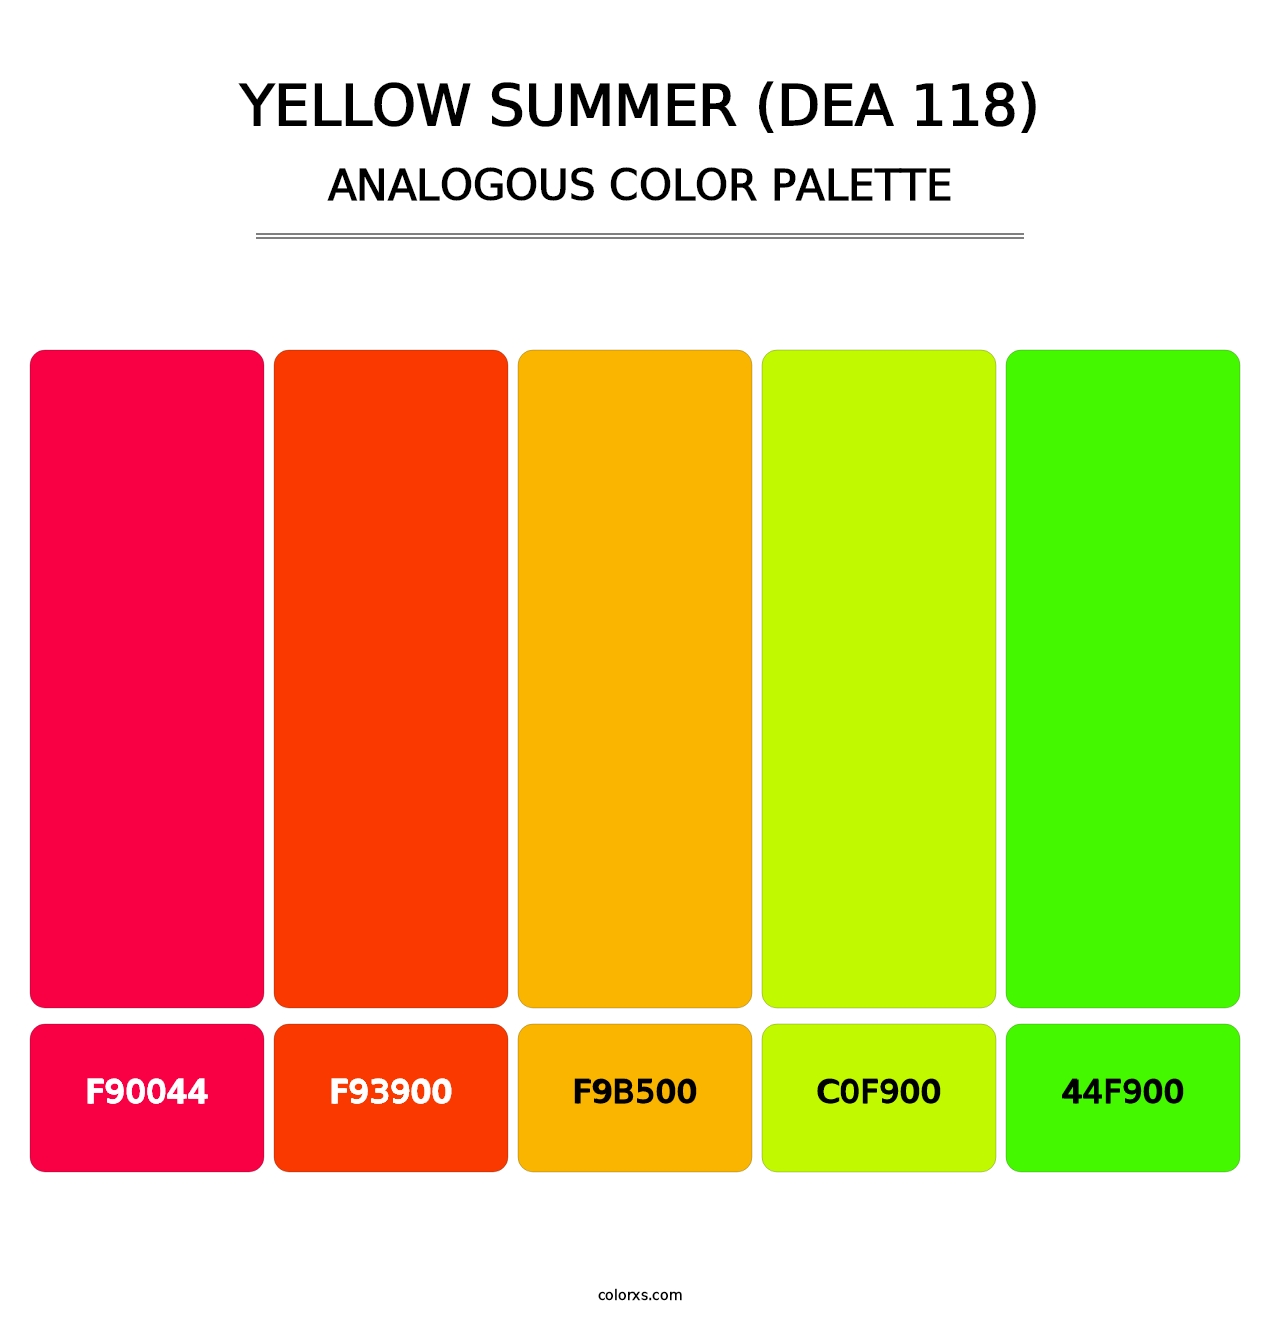 Yellow Summer (DEA 118) - Analogous Color Palette